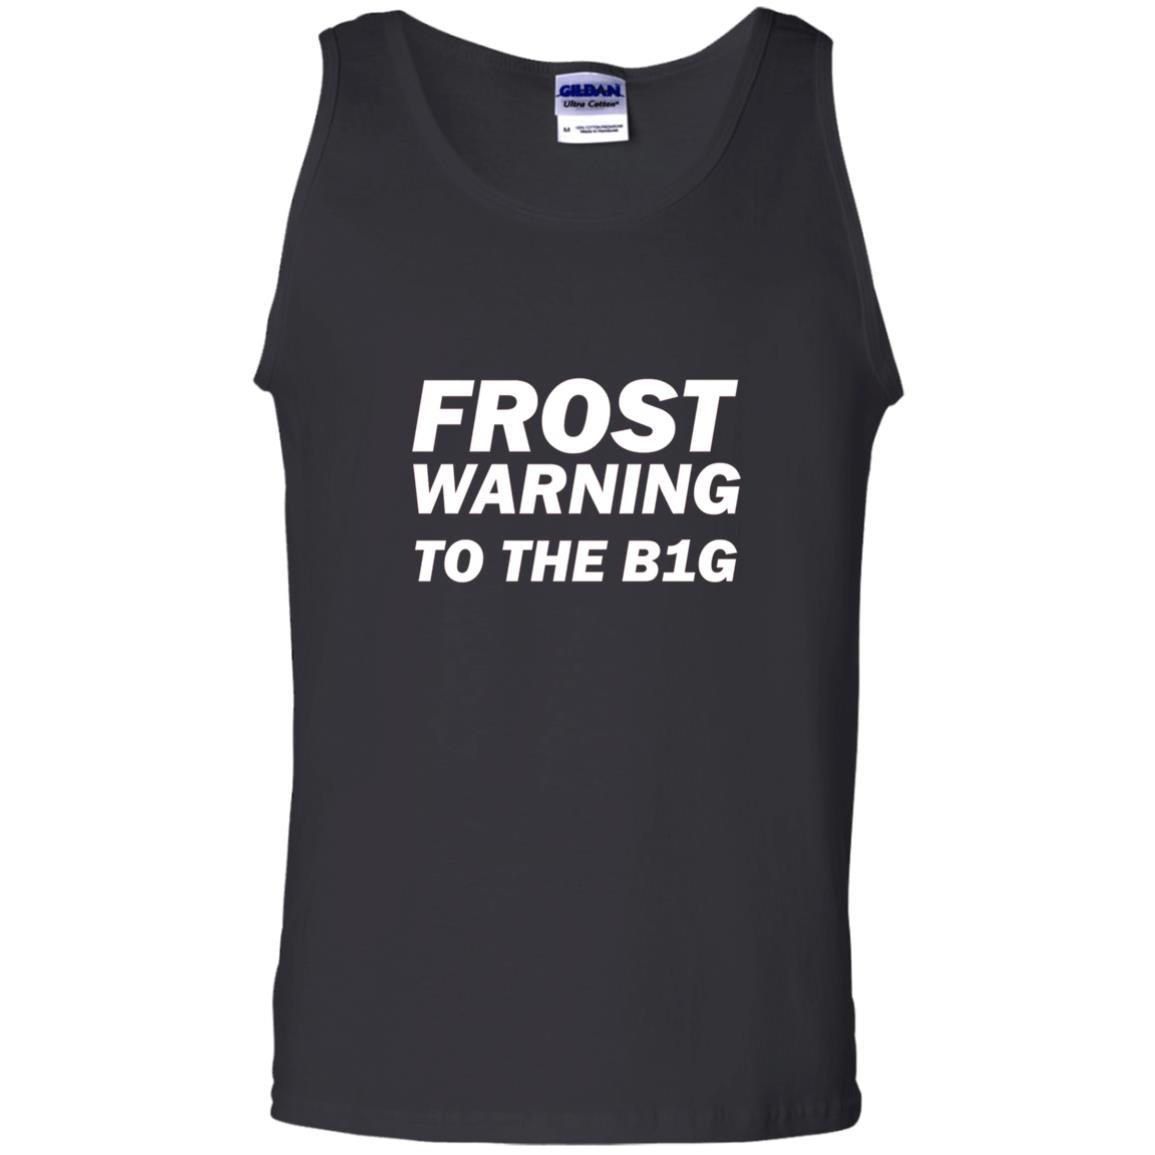 Frost Warning Nebraska T-shirt